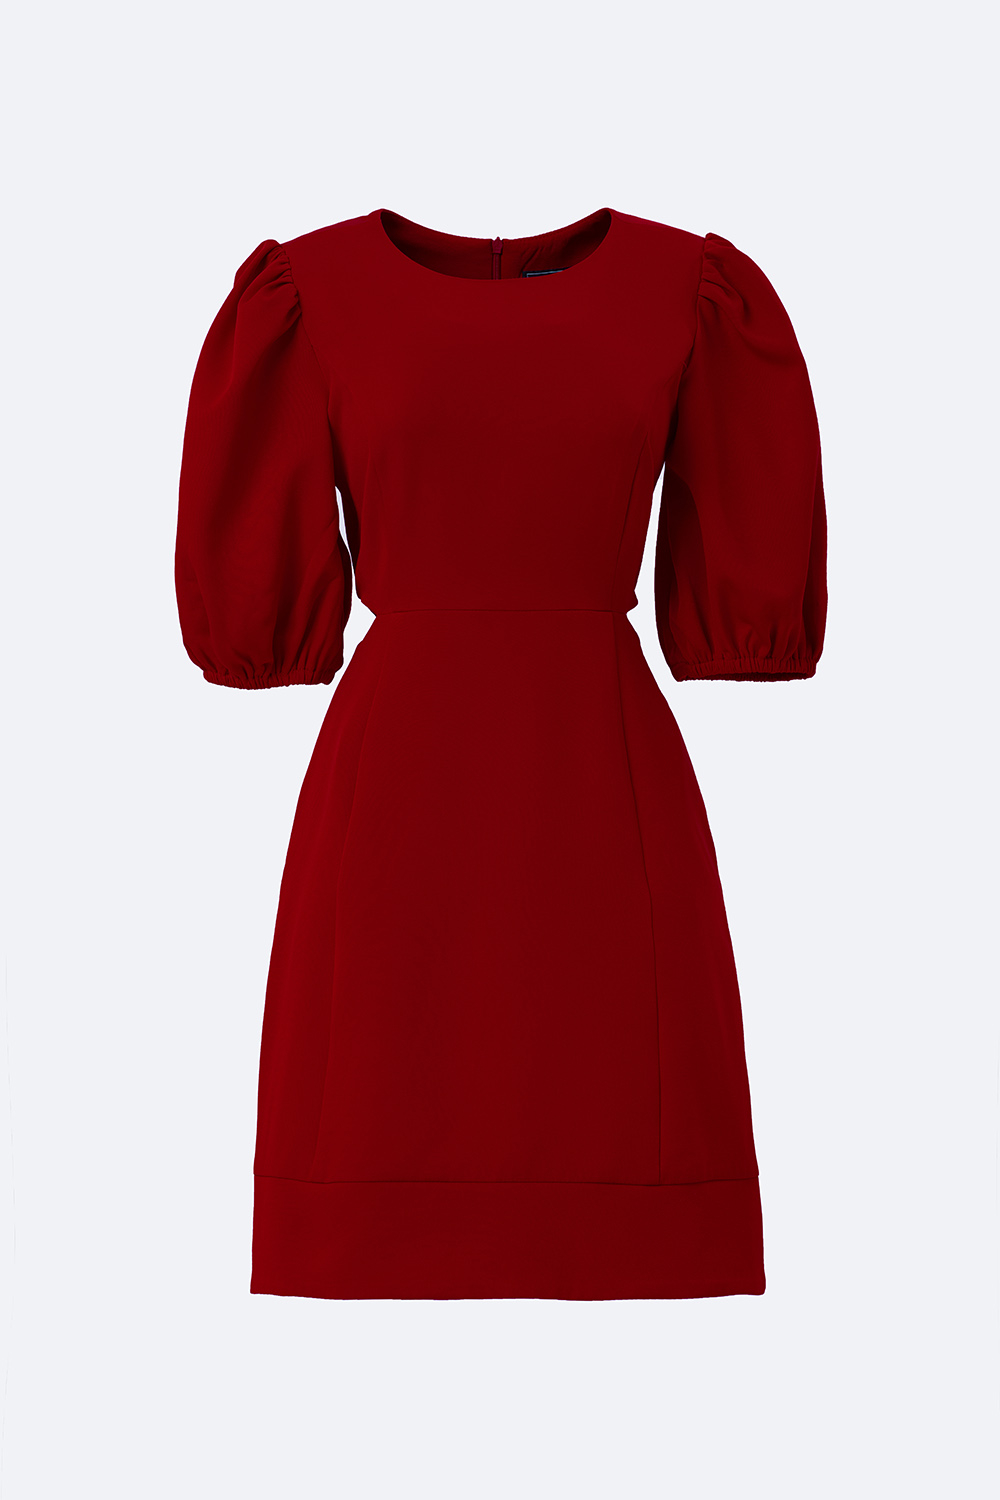 Đầm đỏ dự tiệc chữ A eo cut-out KK118-31 | Thời trang công sở K&K ...